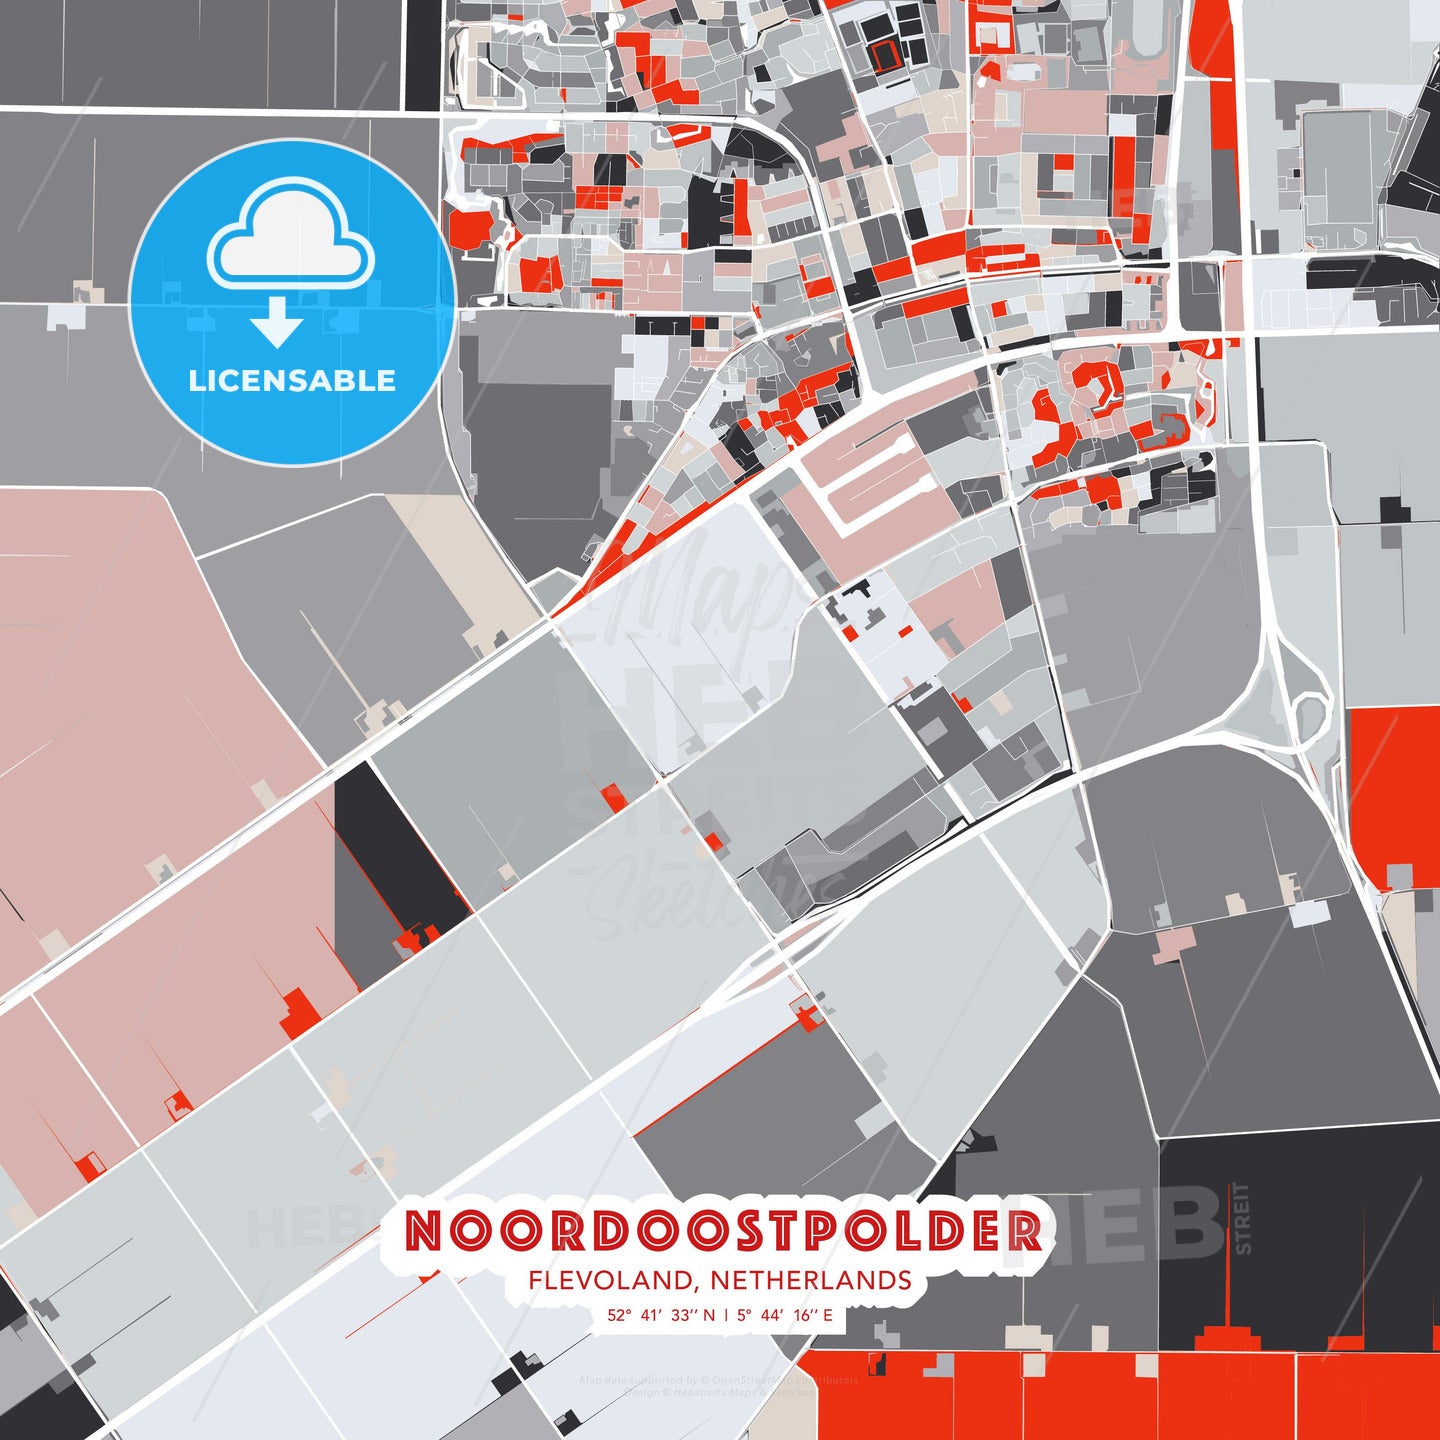 Noordoostpolder, Flevoland, Netherlands, modern map - HEBSTREITS Sketches